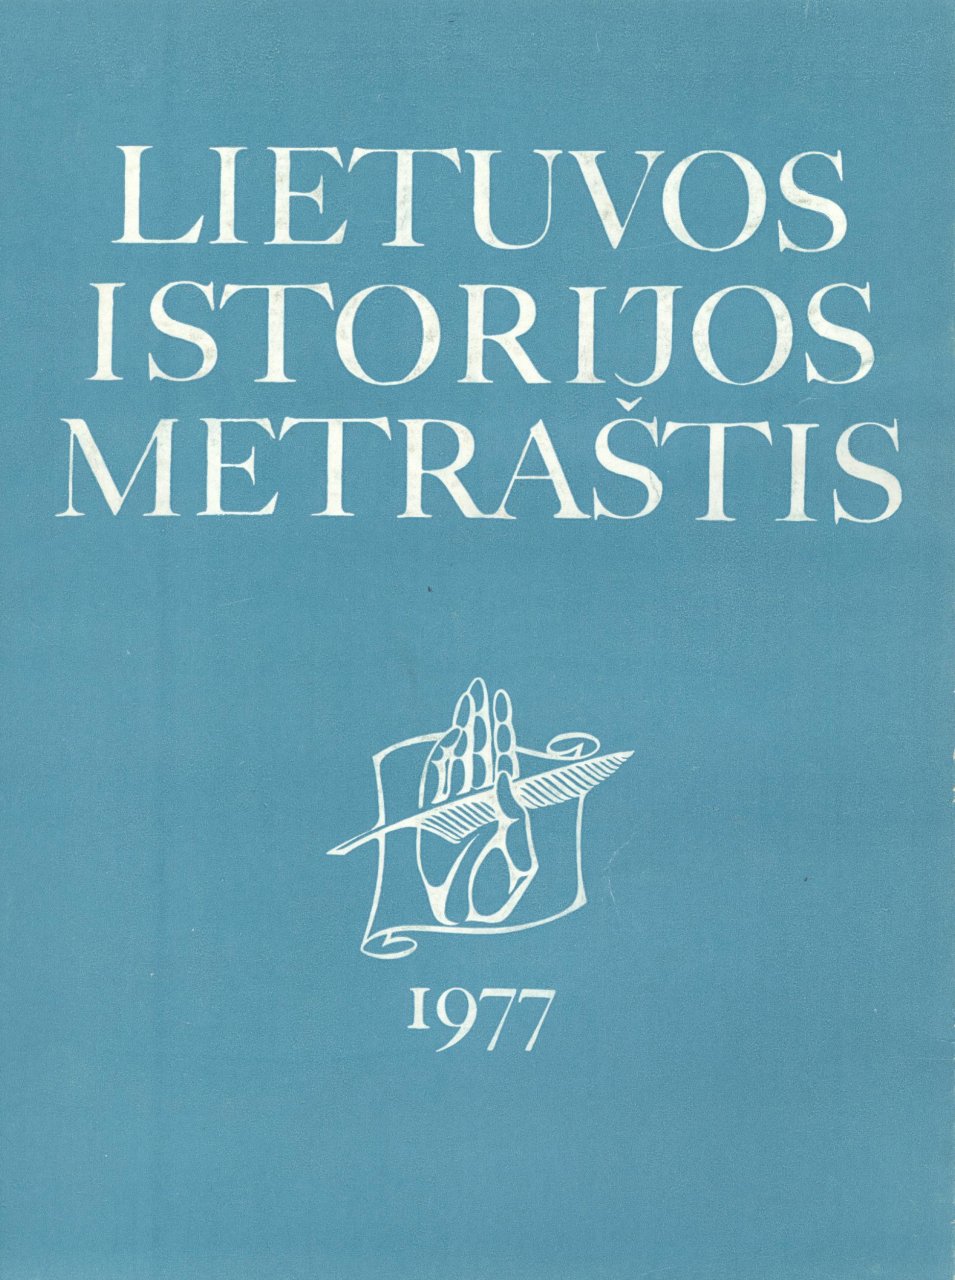 Lietuvos istorijos metraštis 1977 metai